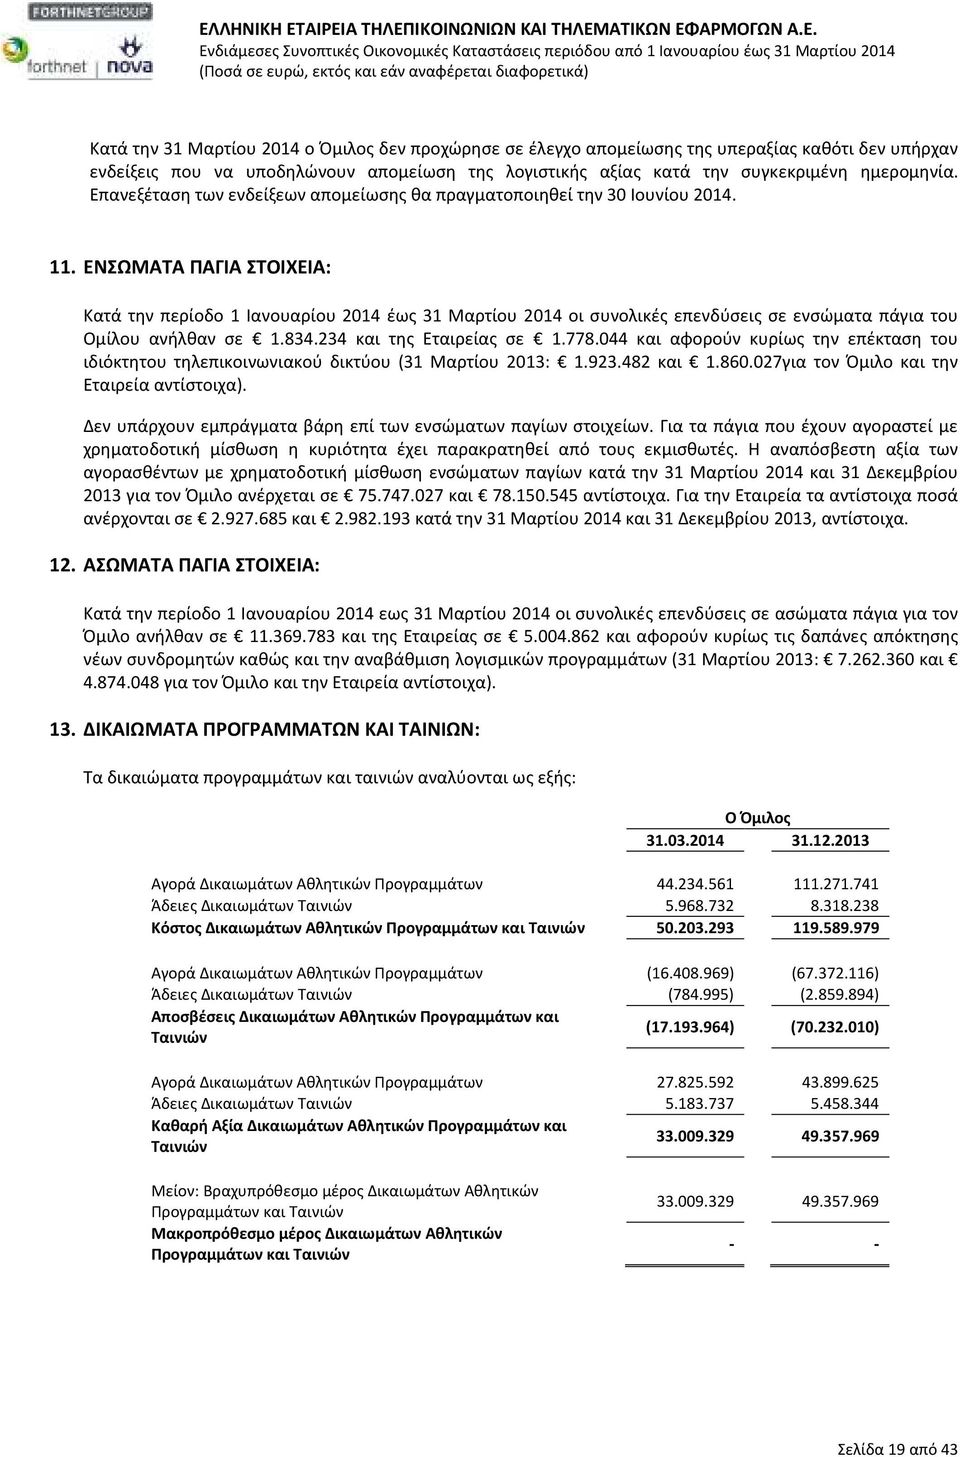 ΕΝΣΩΜΑΤΑ ΠΑΓΙΑ ΣΤΟΙΧΕΙΑ: Κατά την περίοδο 1 Ιανουαρίου 2014 έως 31 Μαρτίου 2014 οι συνολικές επενδύσεις σε ενσώματα πάγια του Ομίλου ανήλθαν σε 1.834.234 και της Εταιρείας σε 1.778.